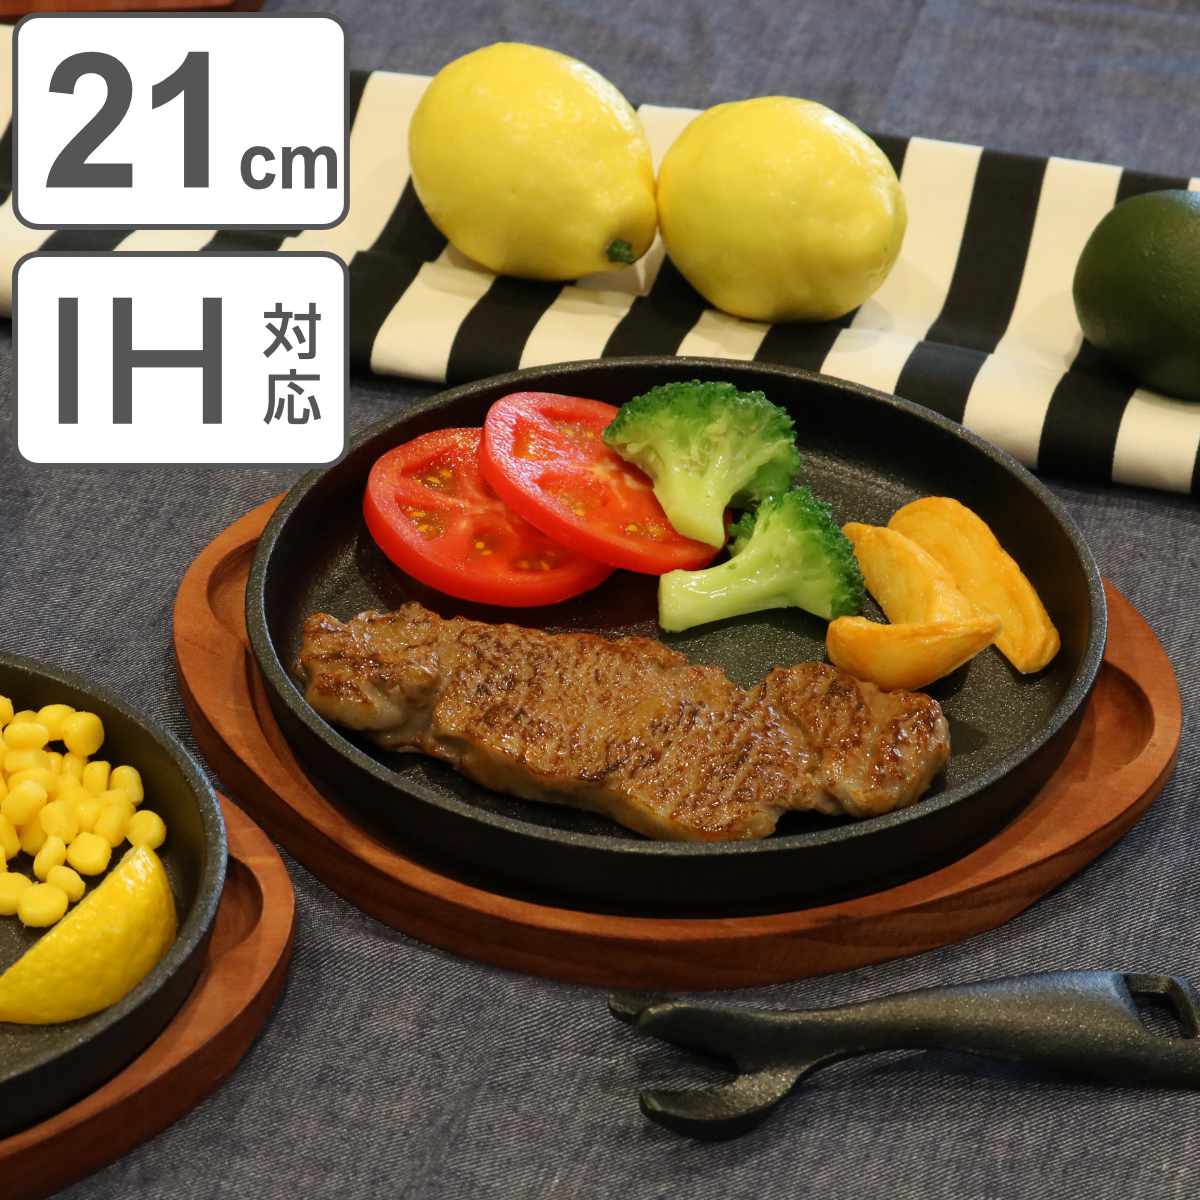 ステーキ皿 丸型 21cm スプラウト 鉄鋳物製 IH対応 